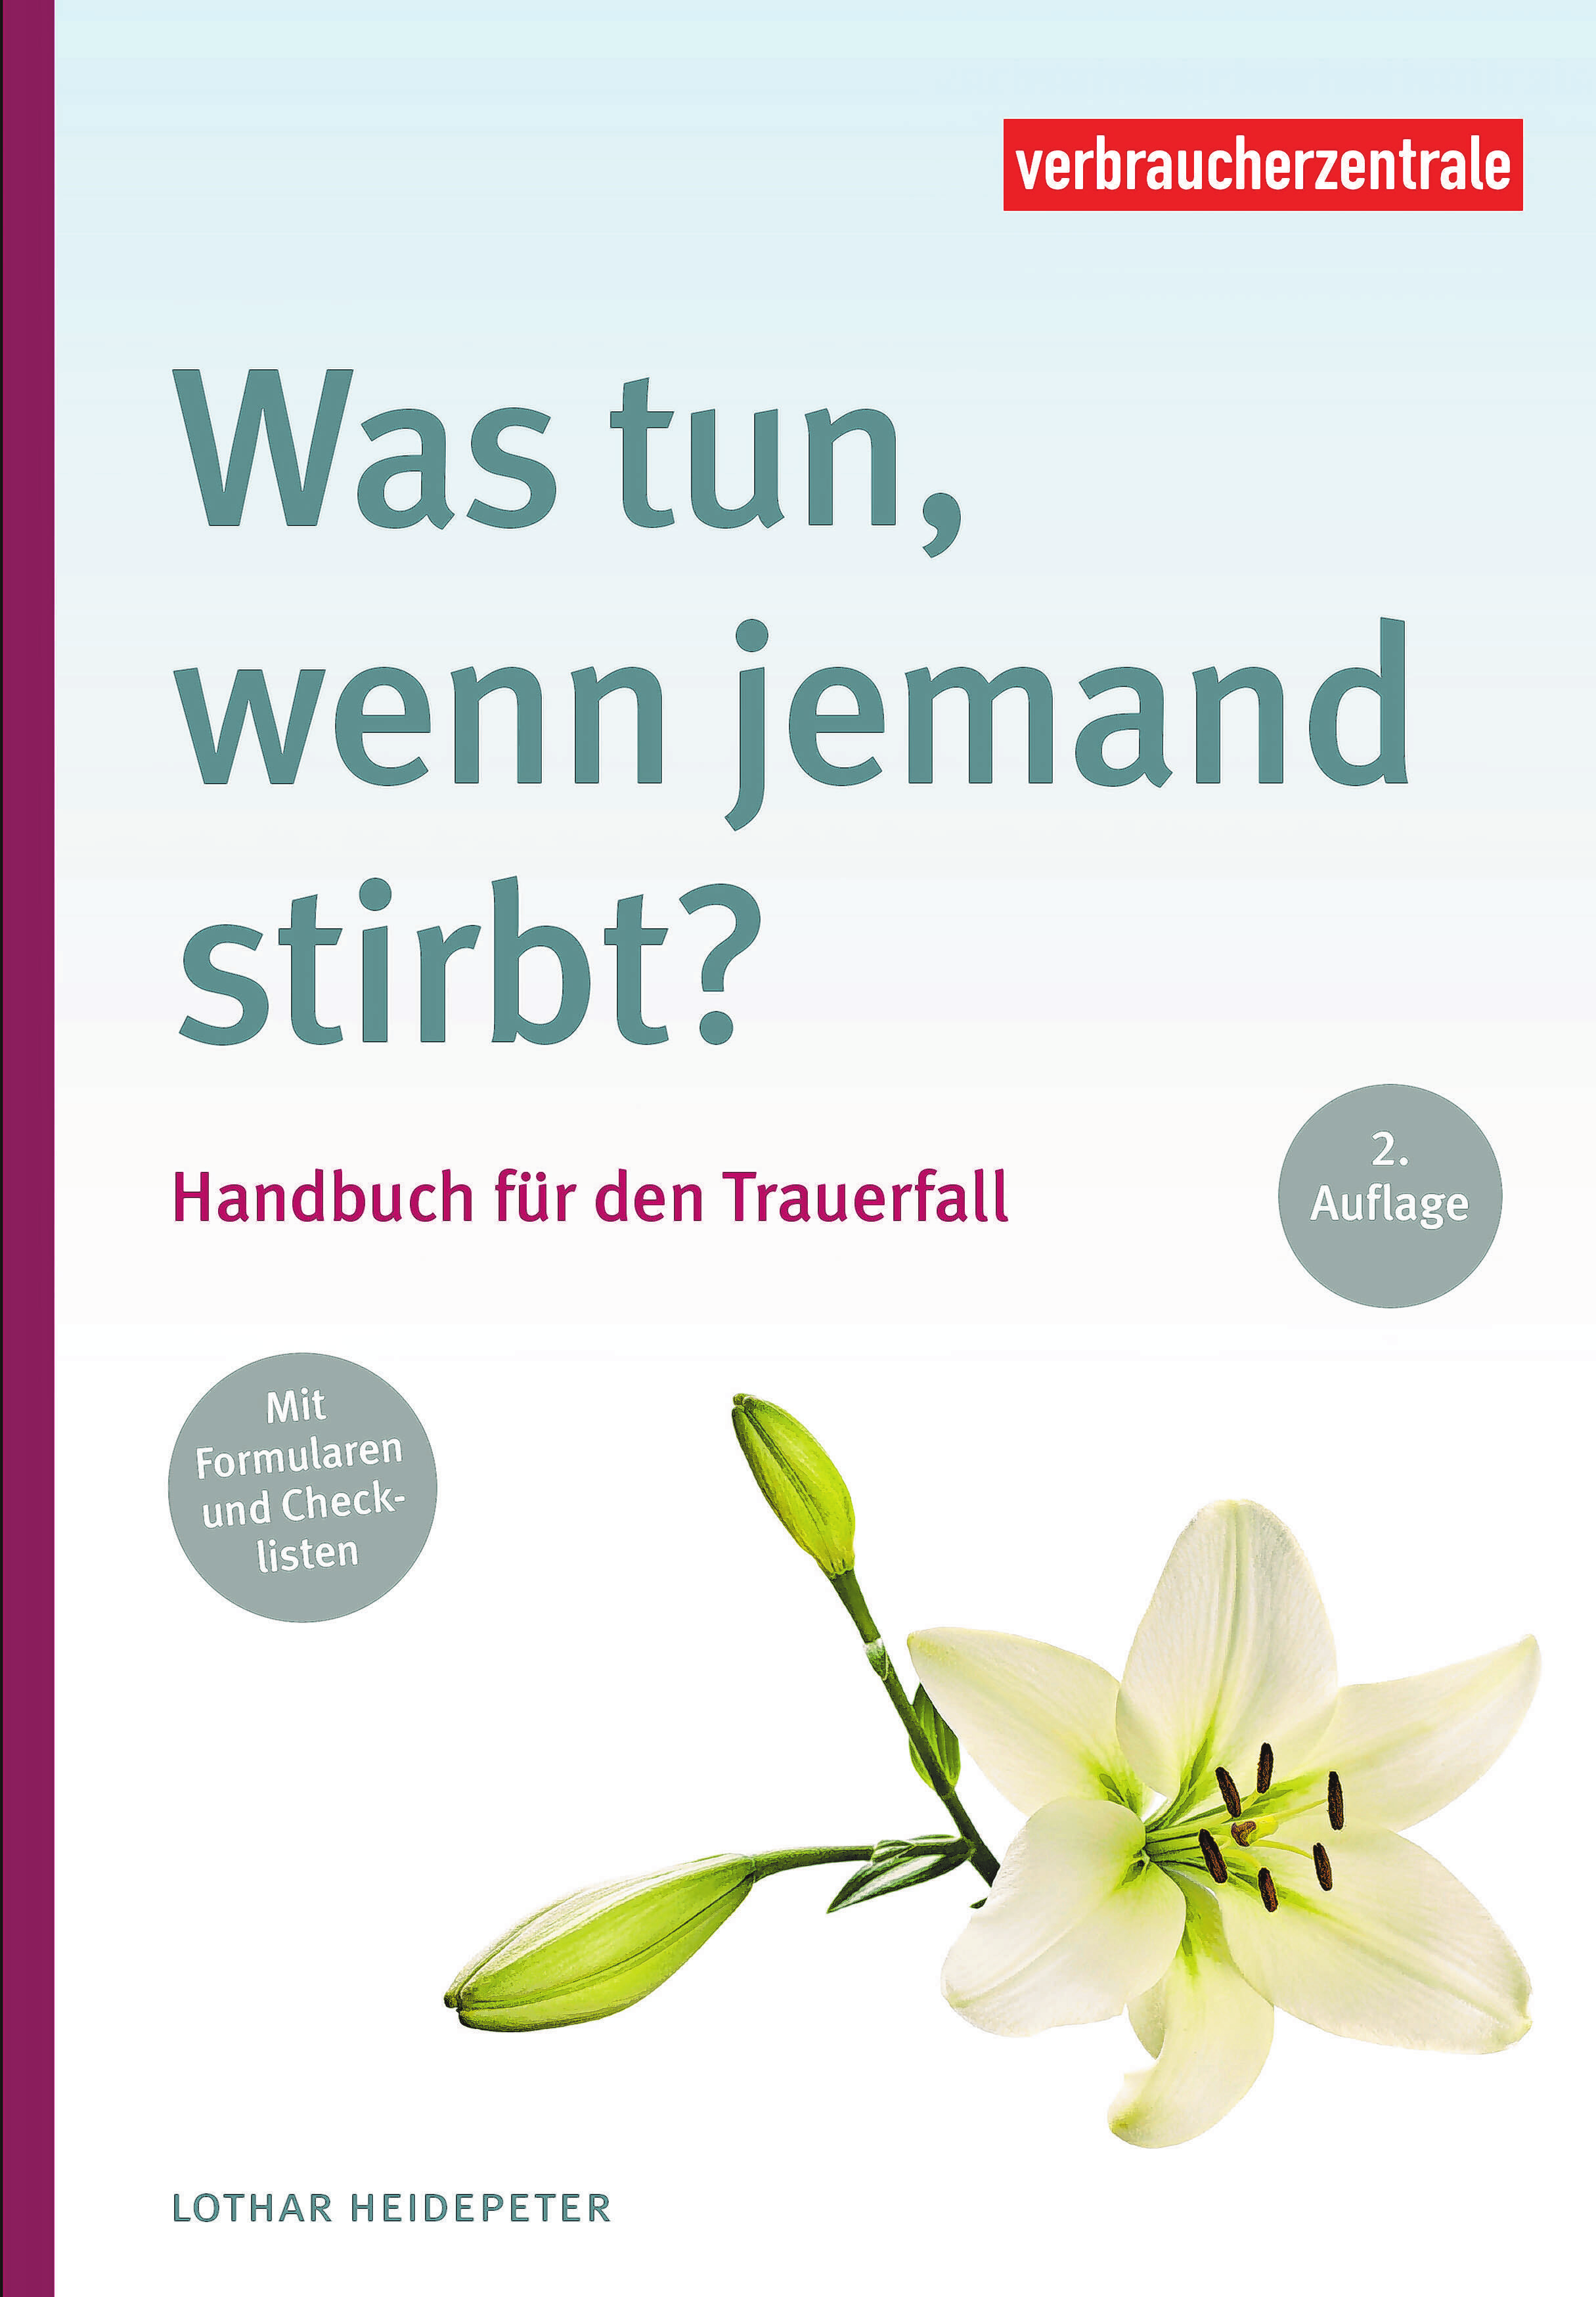 „Was tun, wenn jemand stirbt? Handbuch für den Trauerfall“, 164 Seiten, 16,90 Euro